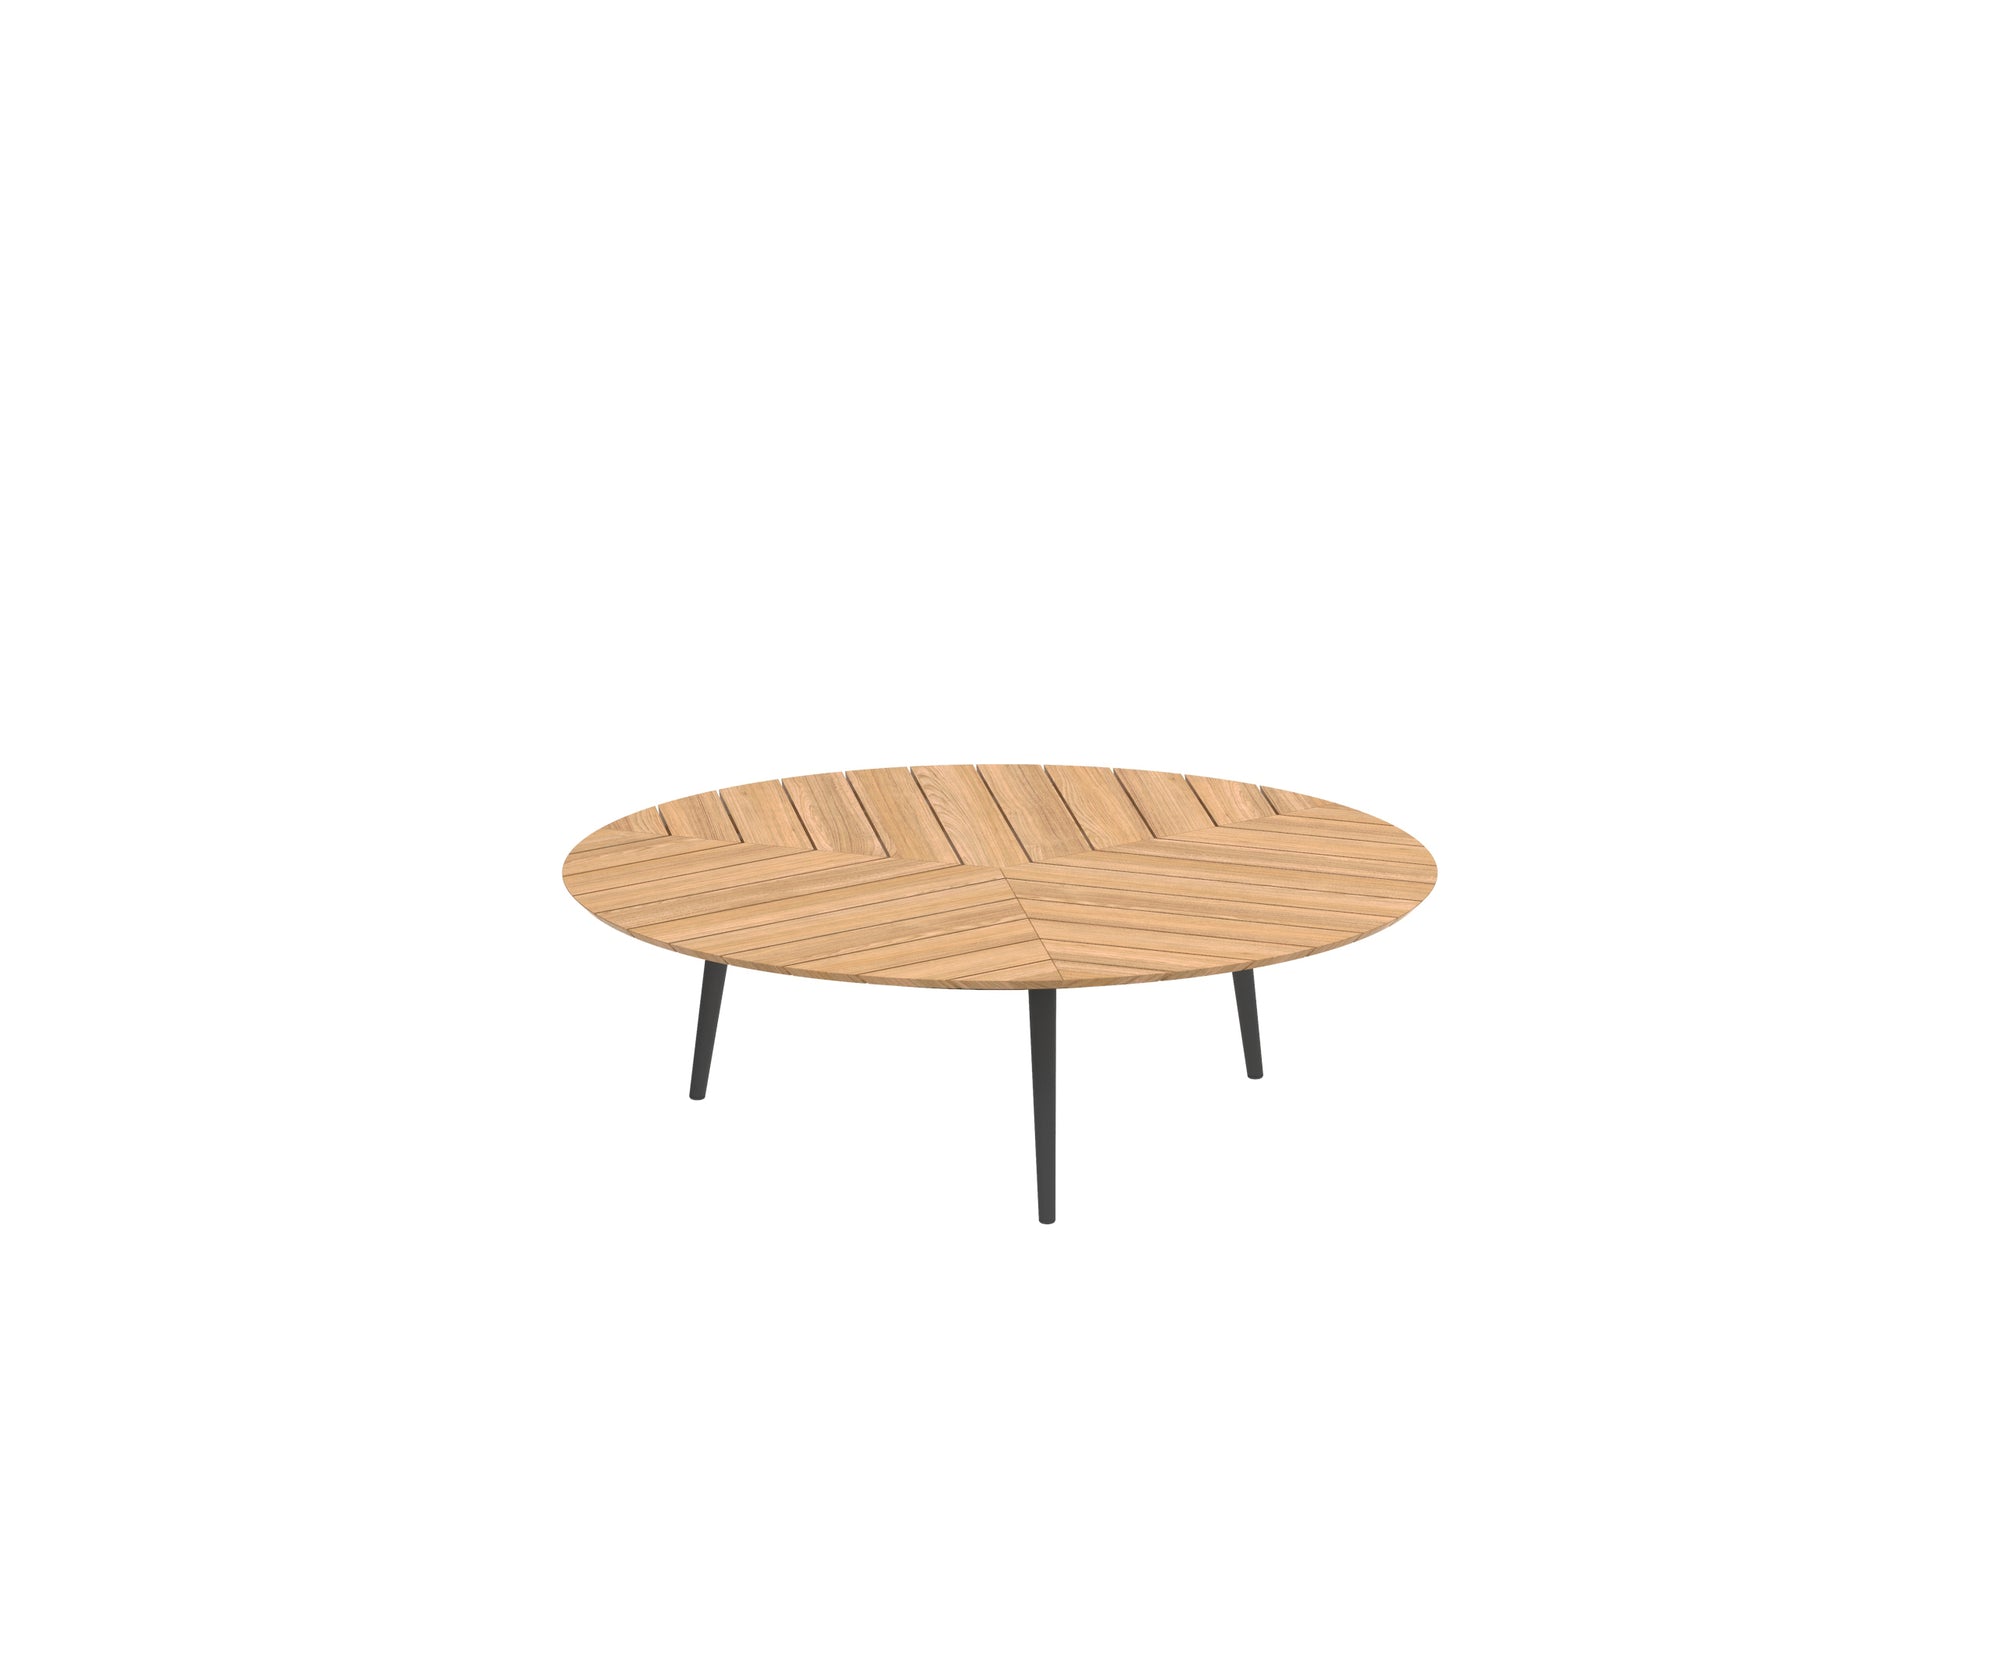 Styletto Round Low Lounge Table | Royal Botania 